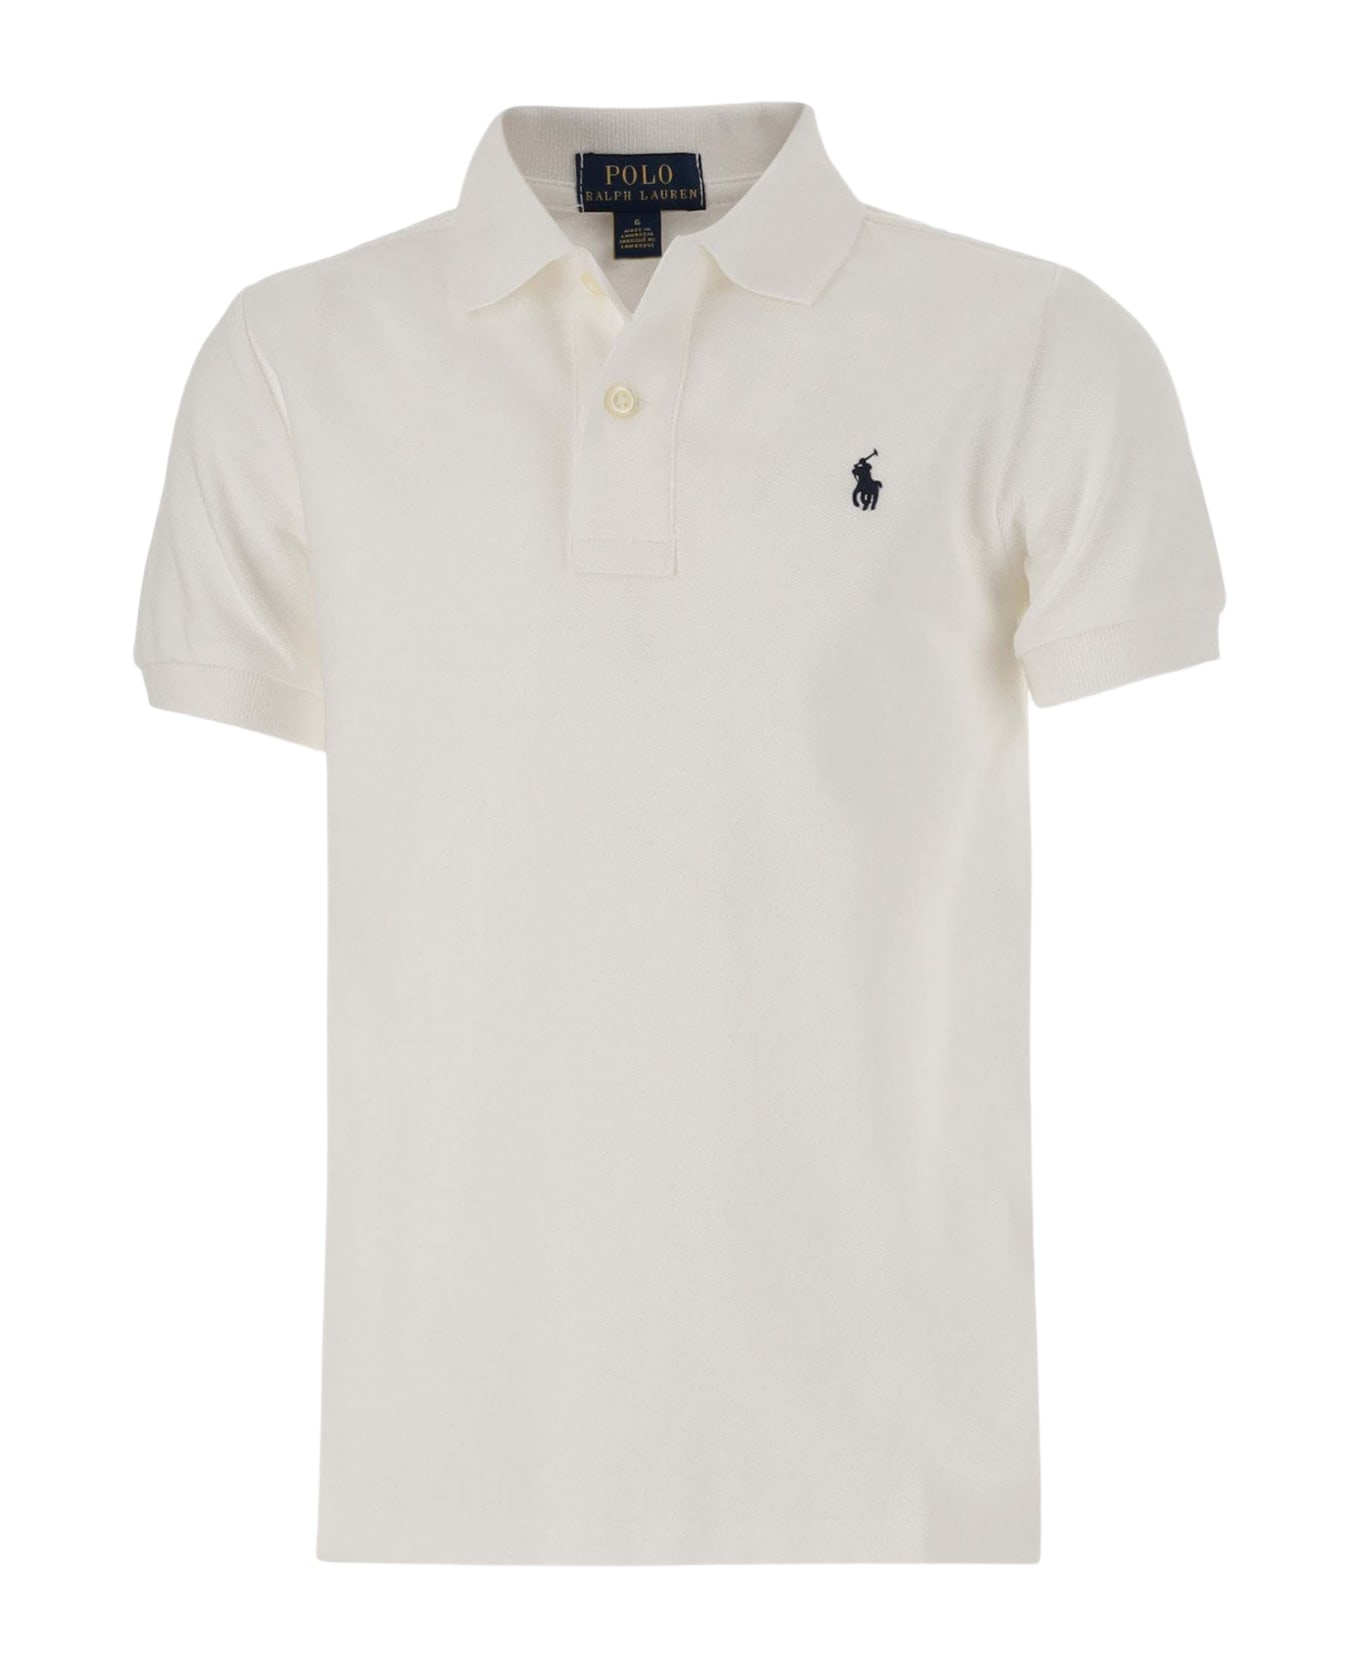 Polo Ralph Lauren Cotton Polo Shirt With Logo - White